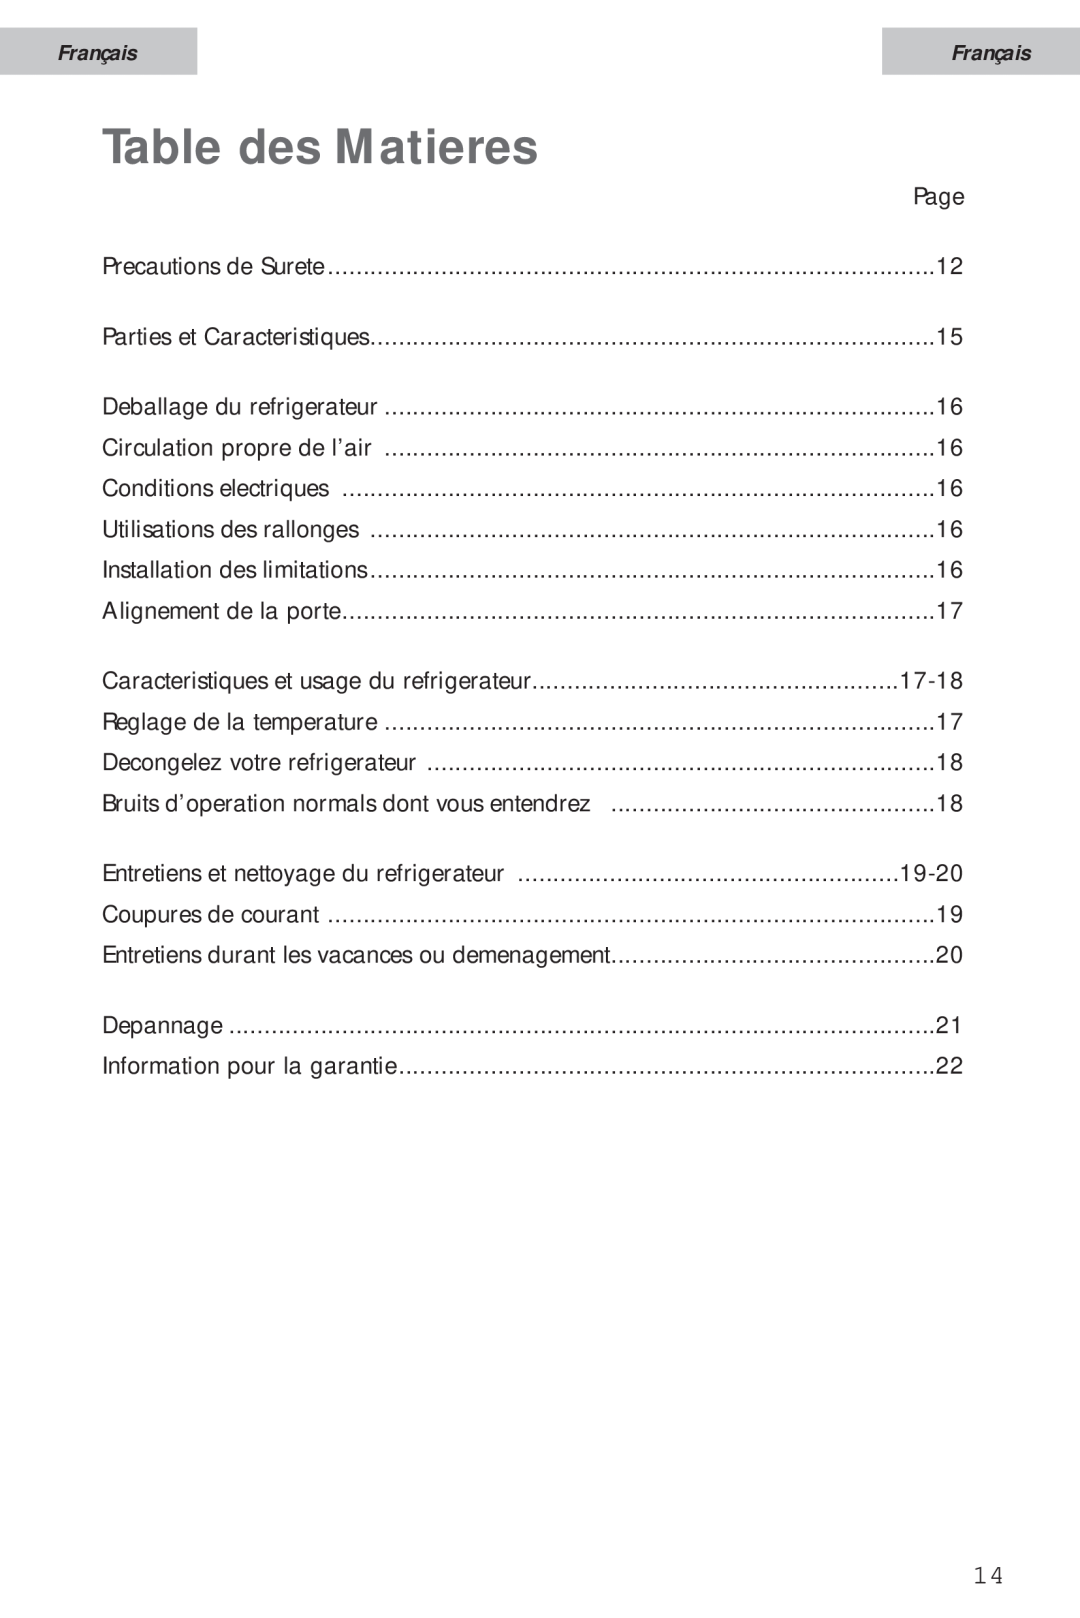 Haier HSA02WNC user manual Table des Matieres, Français 